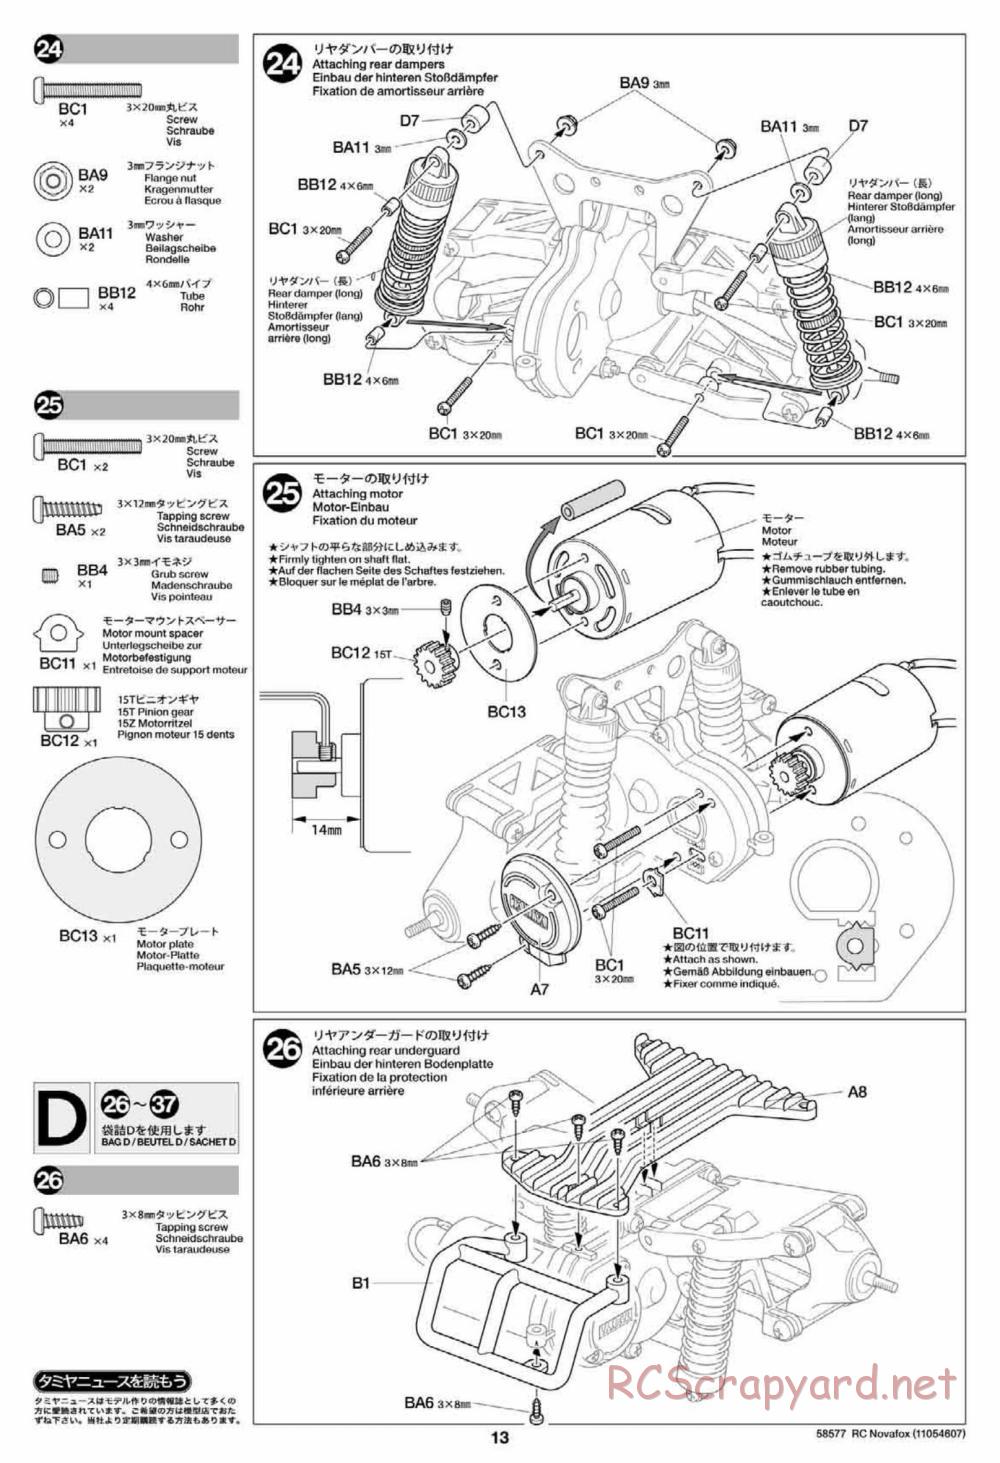 Tamiya - Novafox Chassis - Manual - Page 13